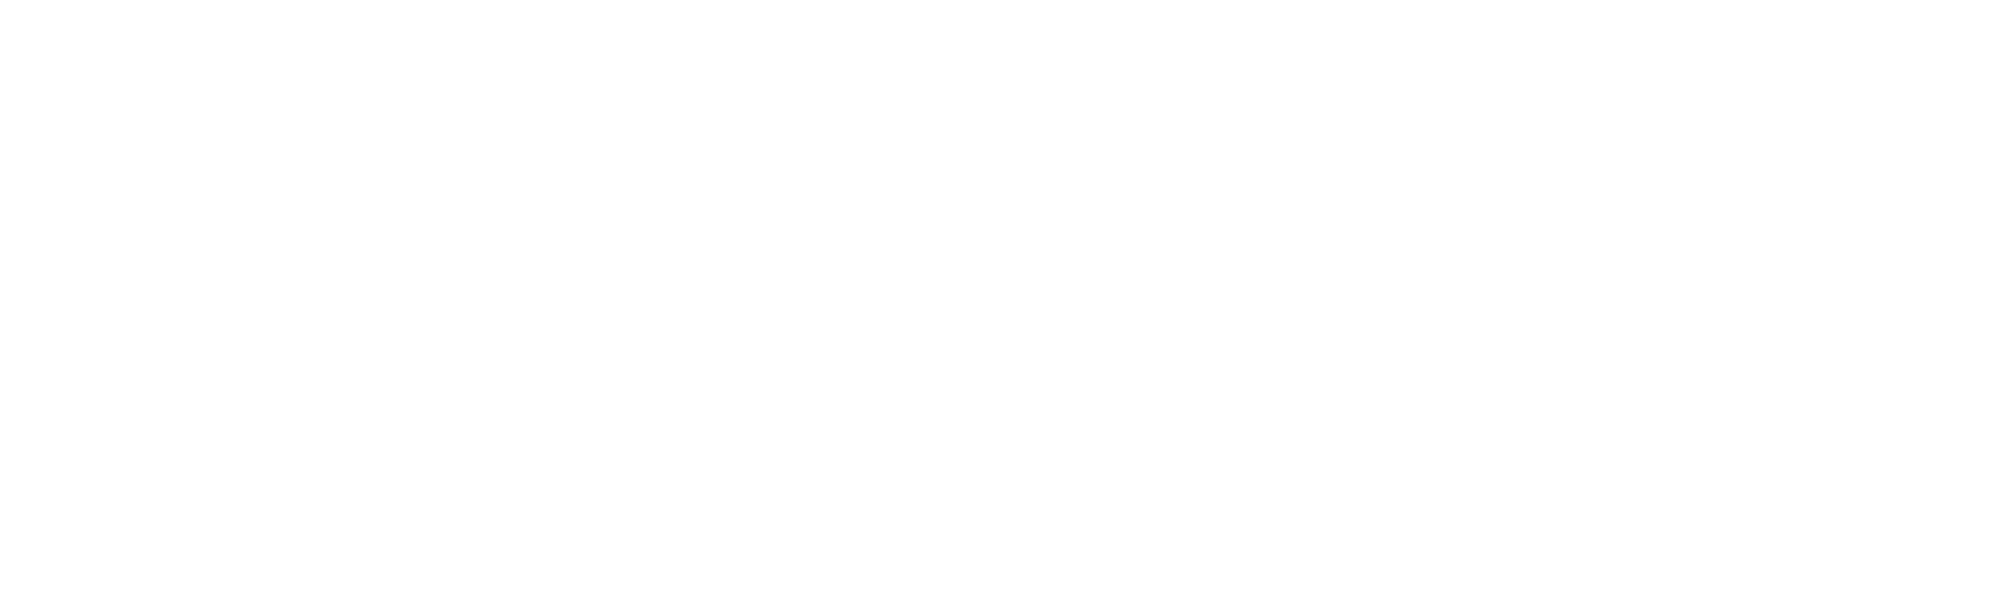 Nova Gorica et Gorica - capitale européenne transfrontalière 2025